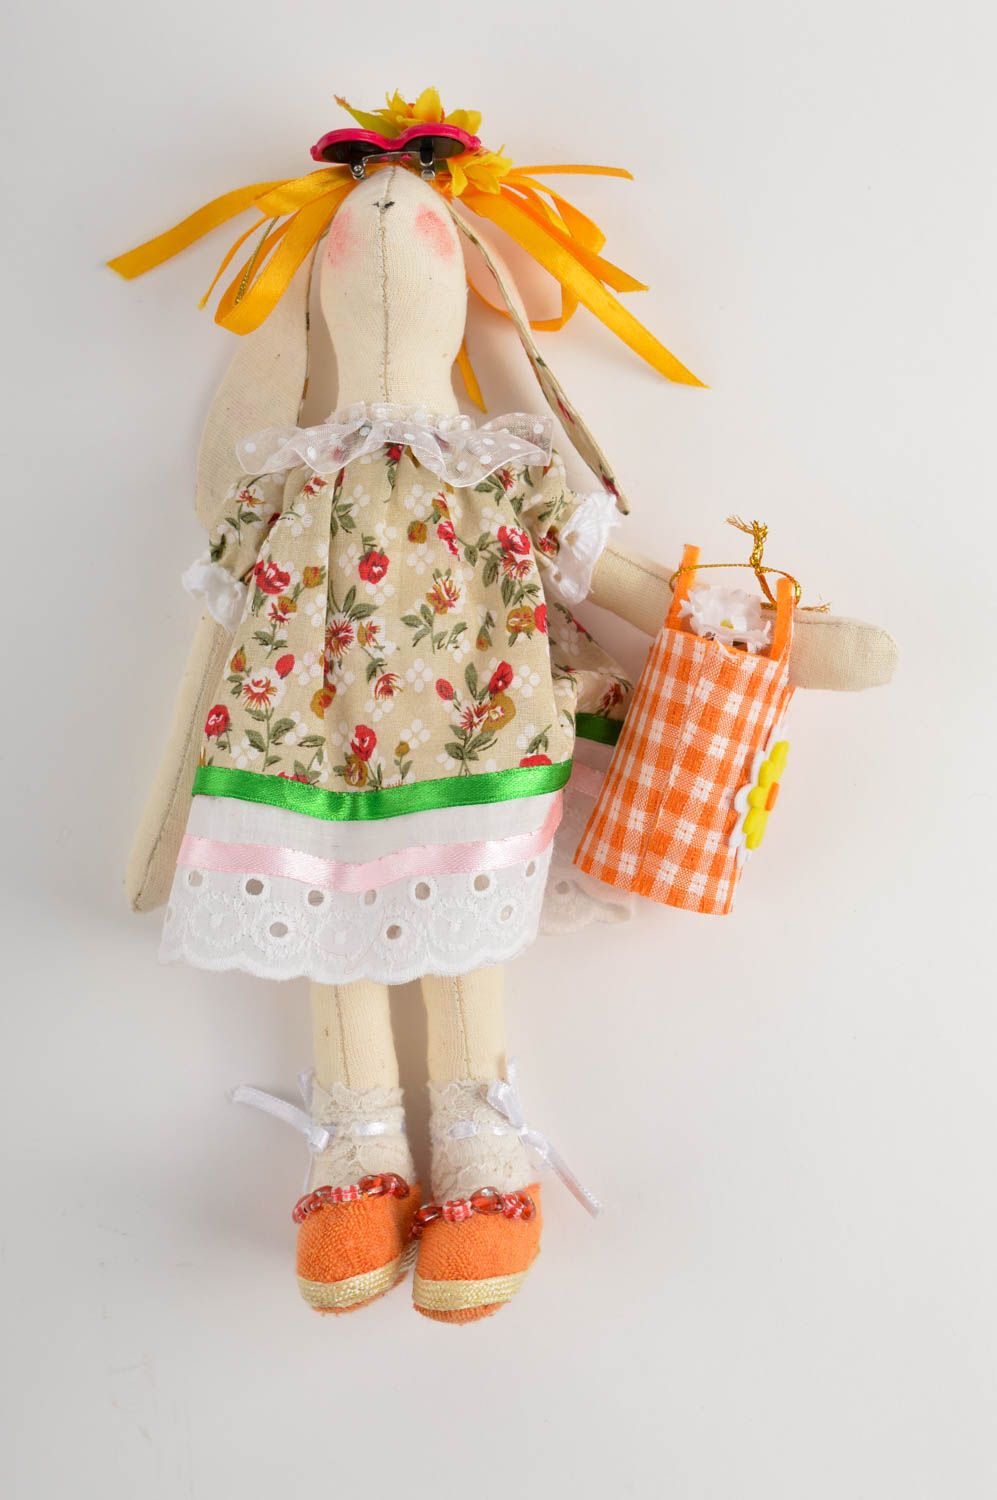 Игрушка заяц-пляжник ручной работы авторская игрушка стильный подарок для дома фото 2